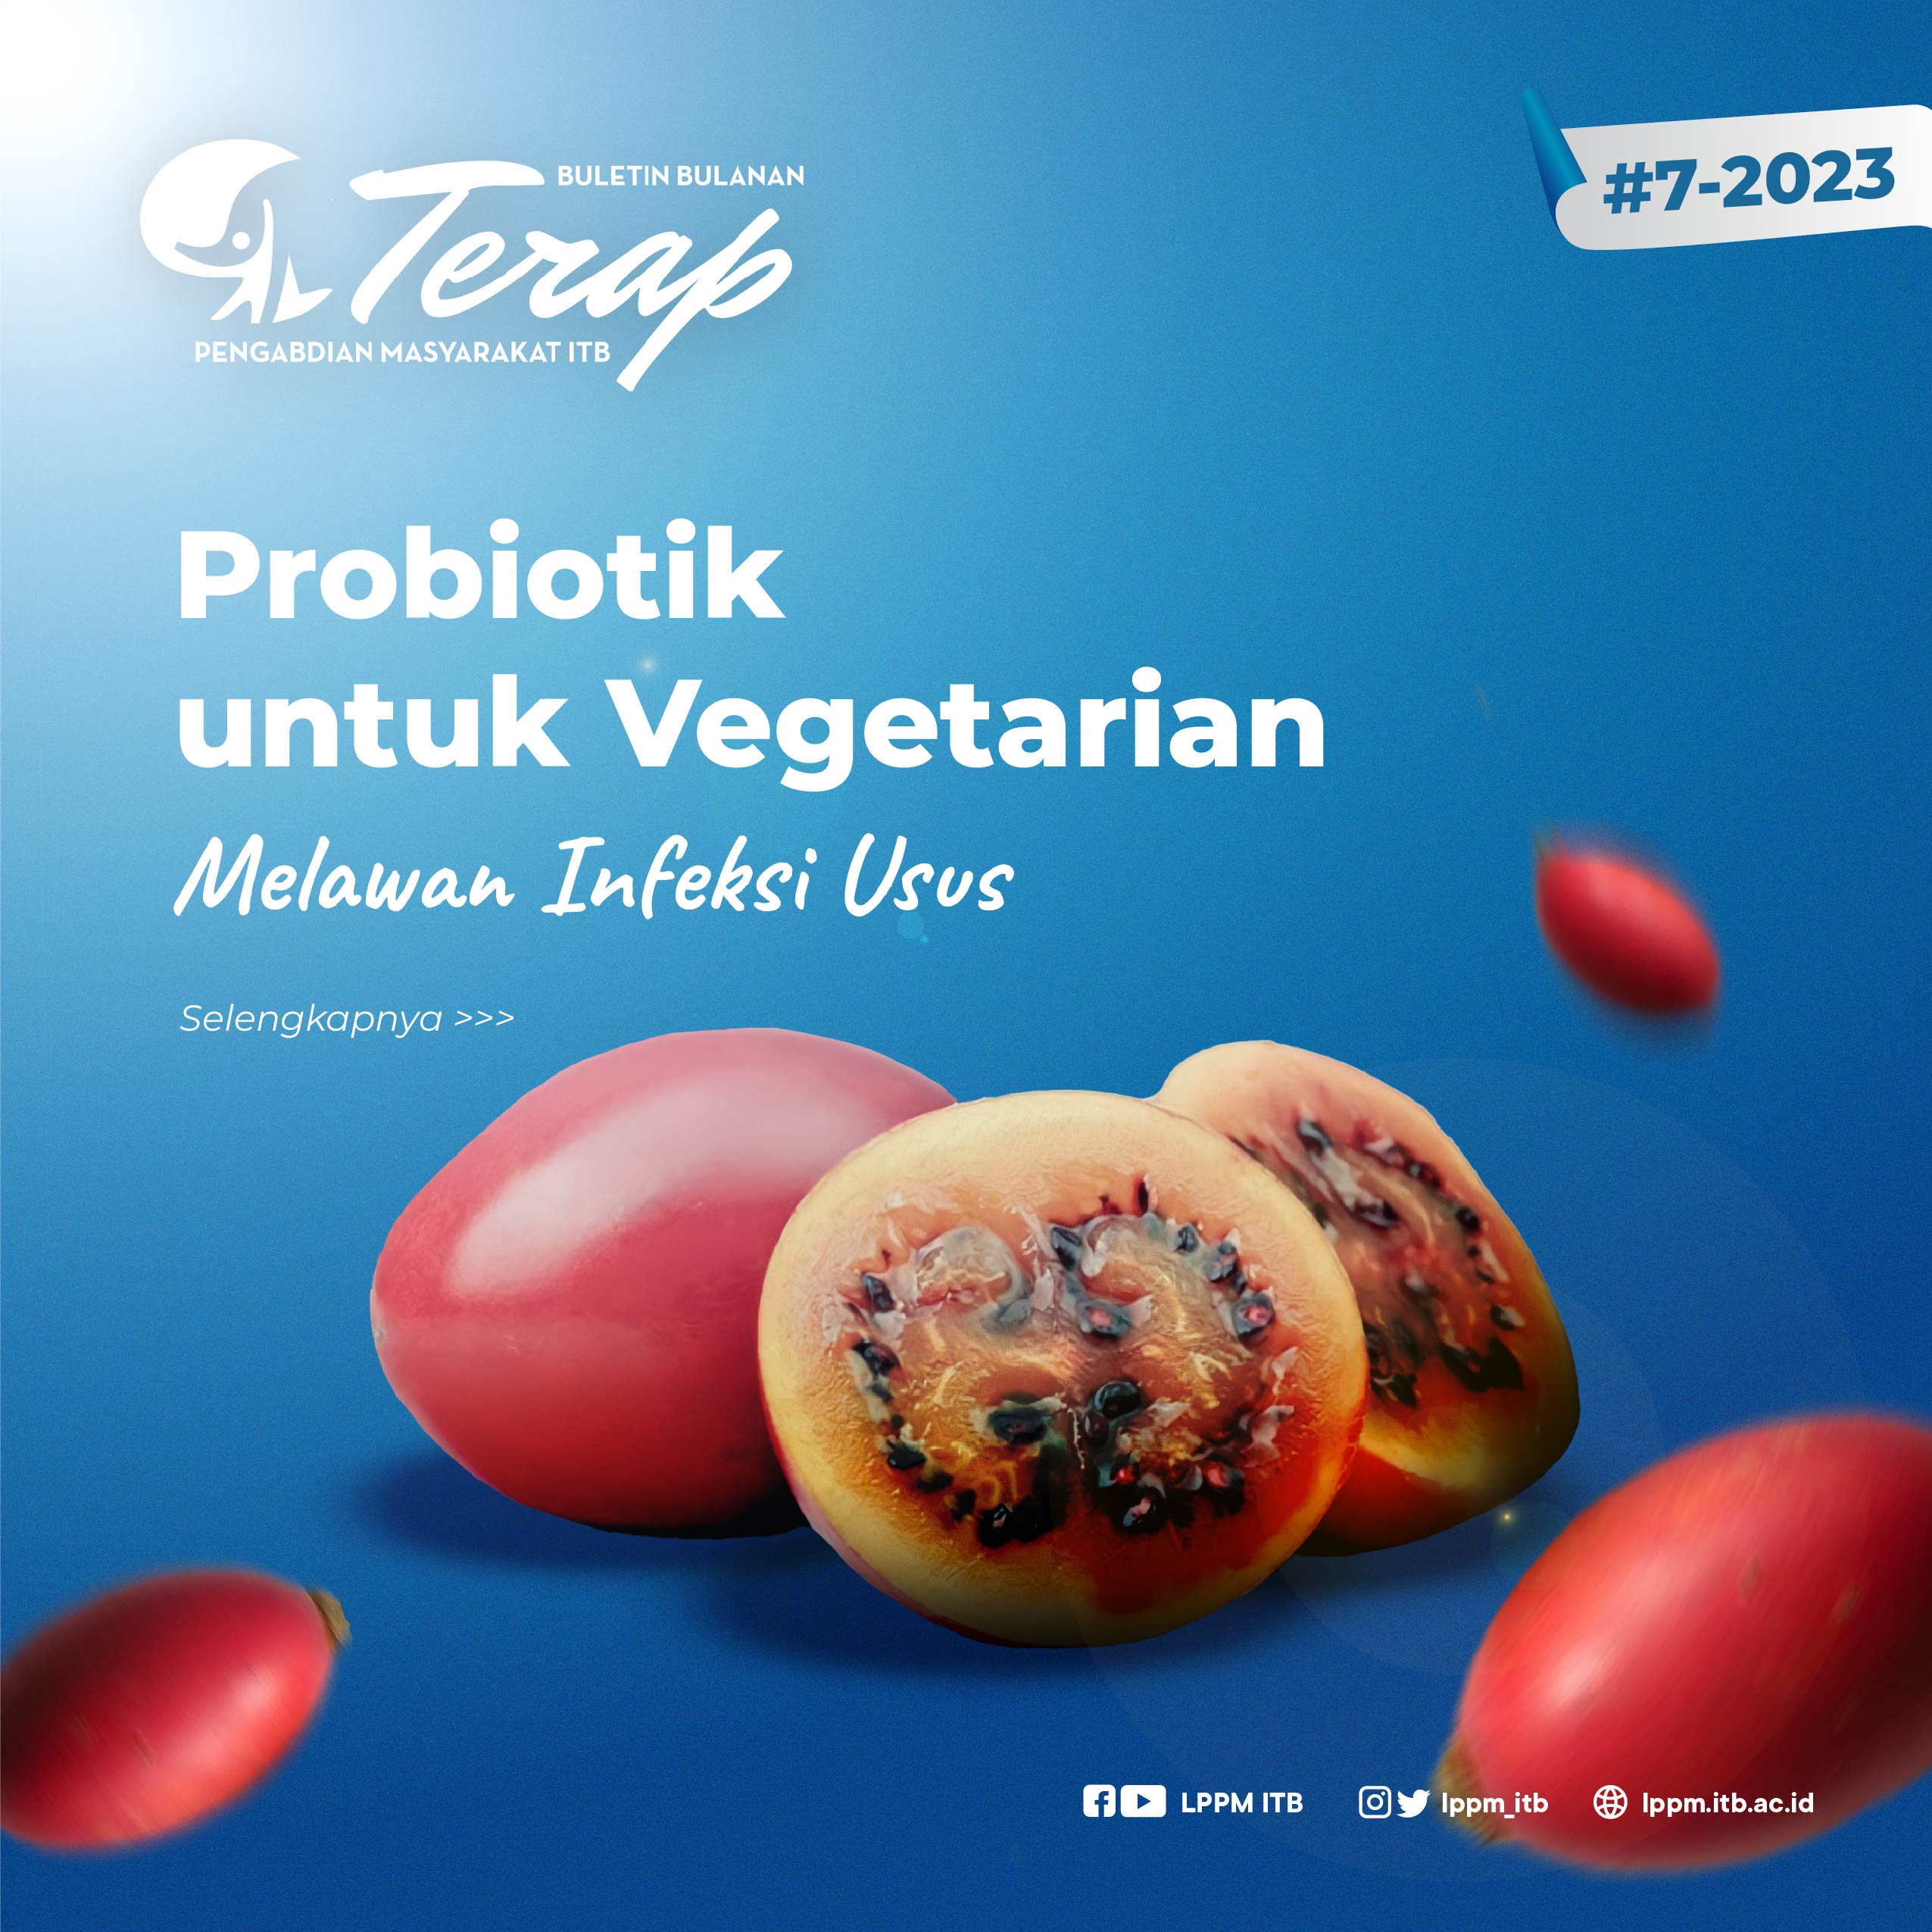 Probiotik untuk Vegetarian Melawan Infeksi Usus